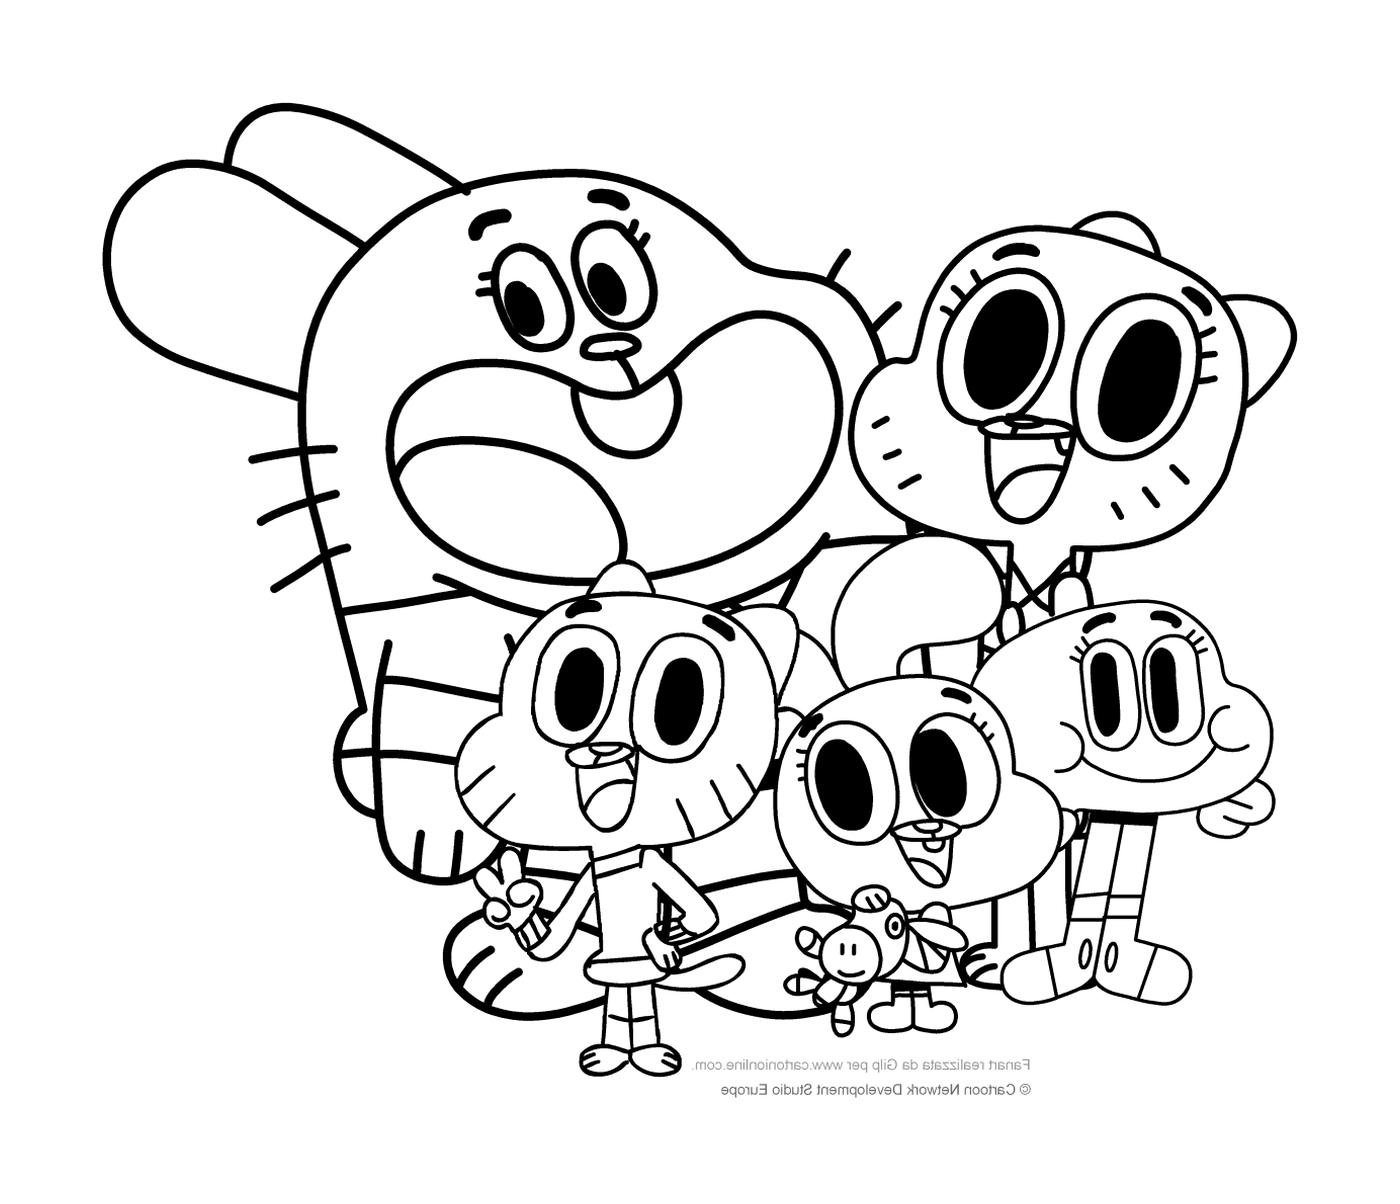   Famille de personnages animés 